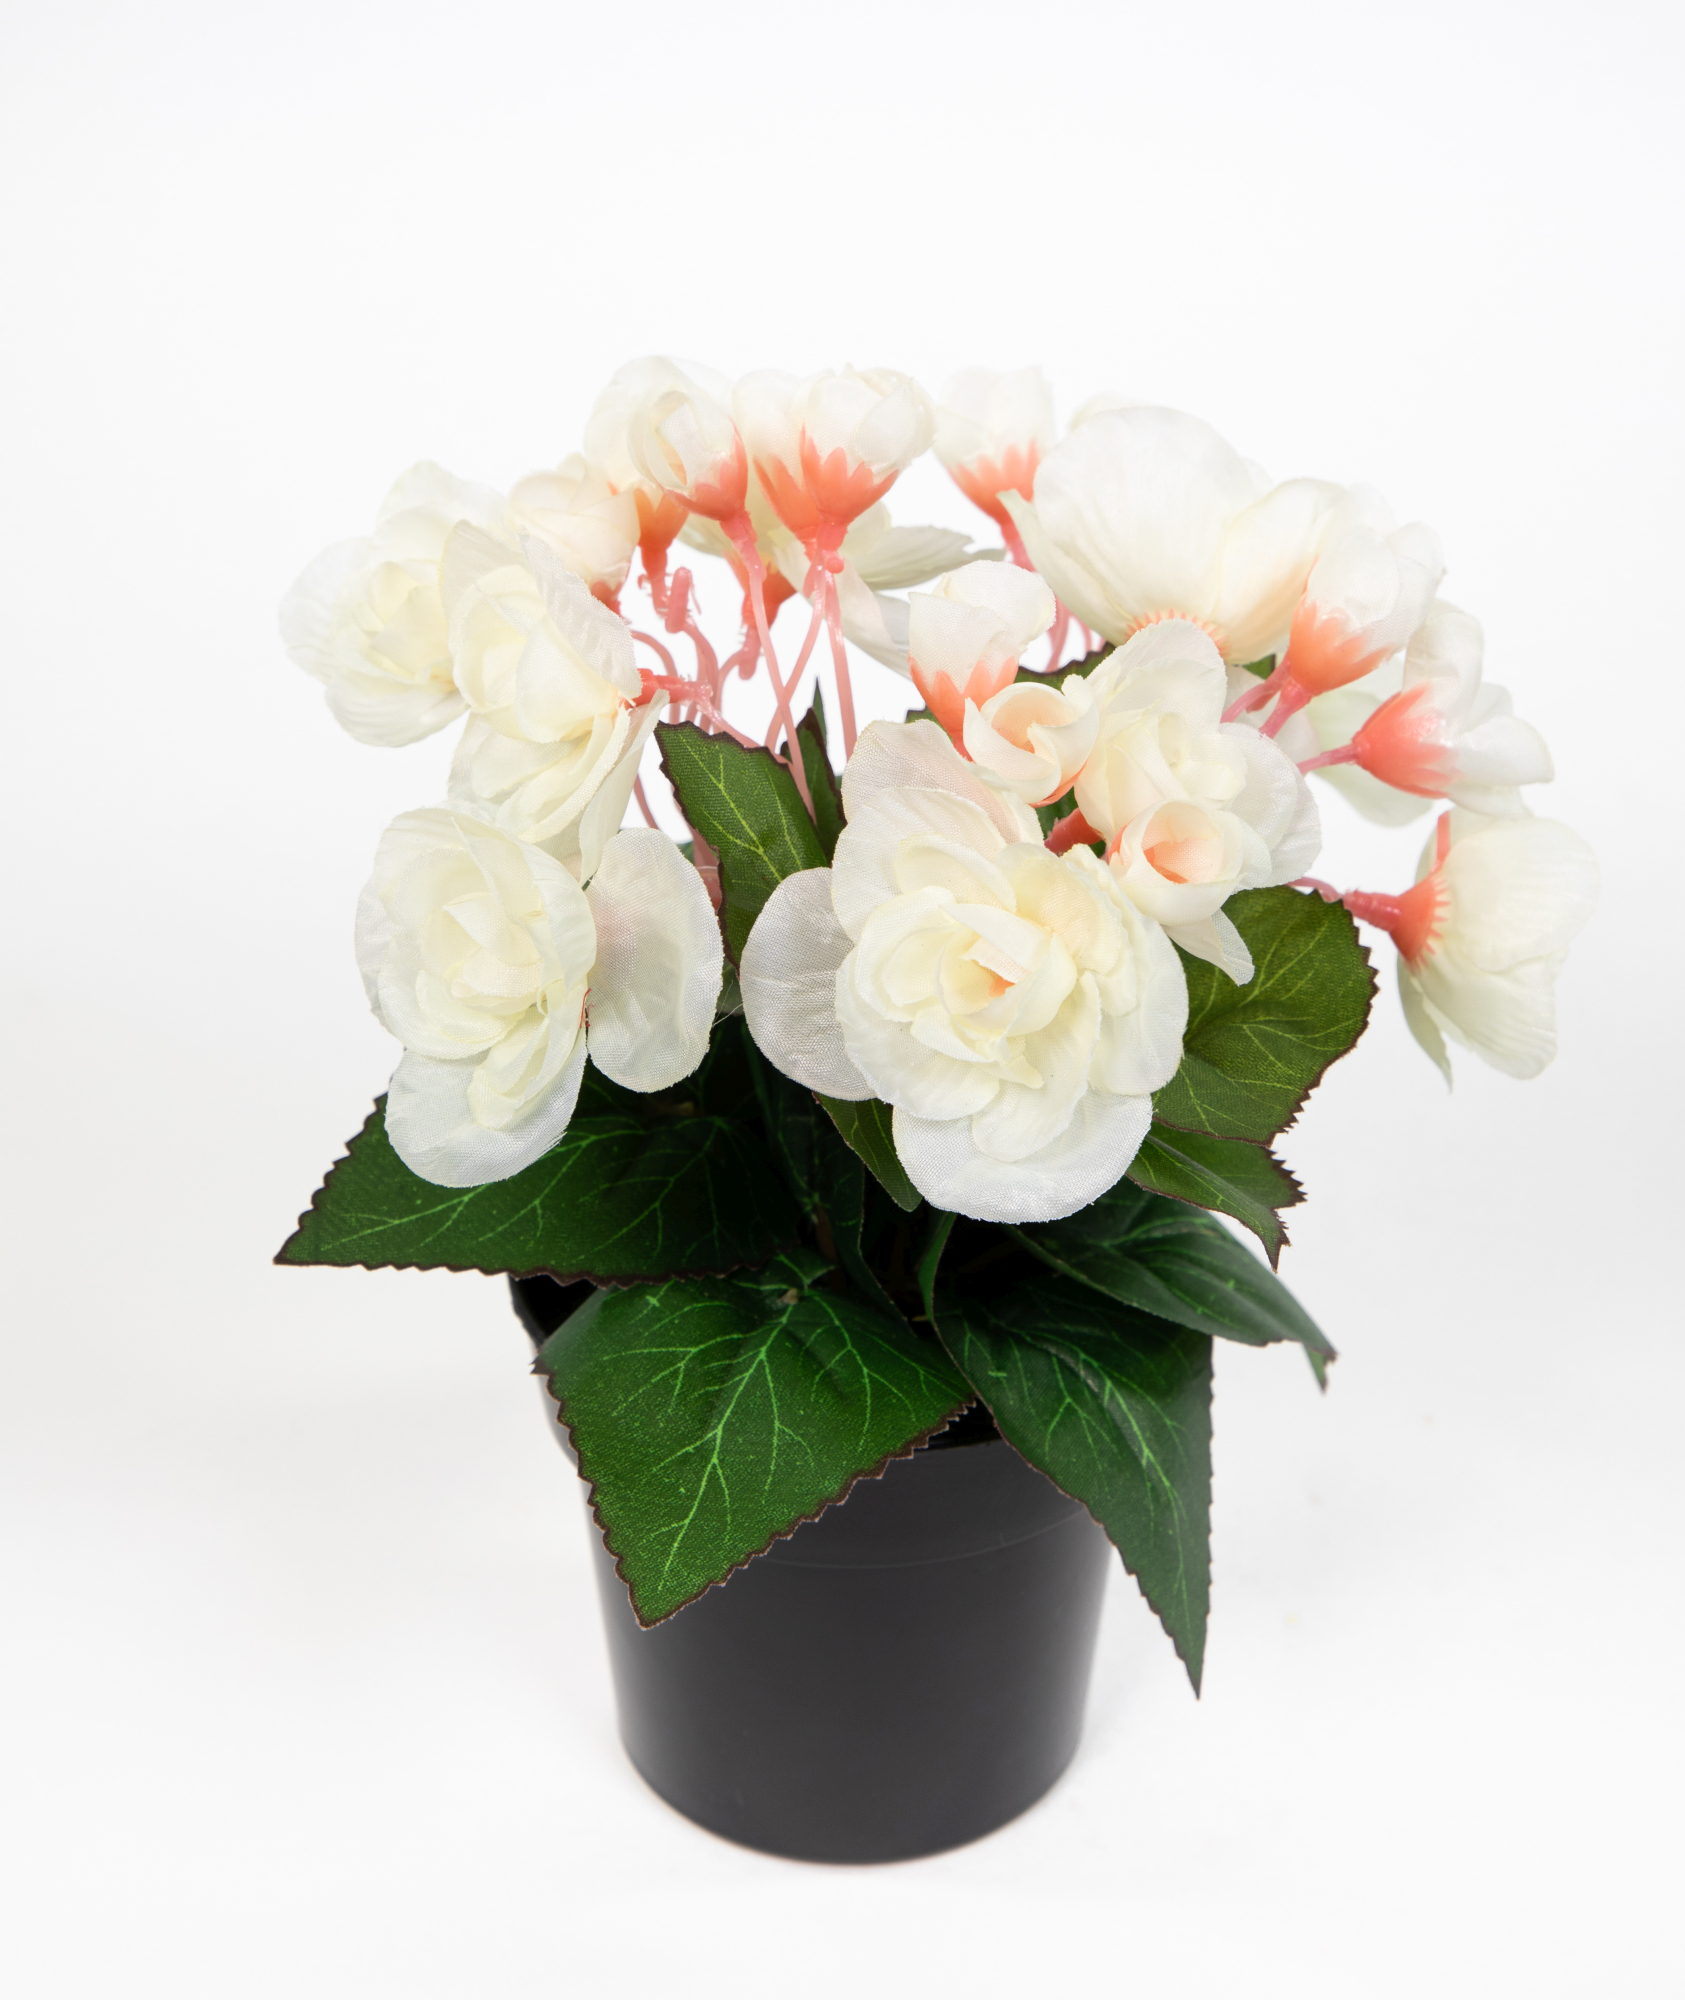 Begonie 20cm weiß im Topf JA Kunstpflanzen Begonienbusch künstliche Blumen Pflanzen Kunstblumen